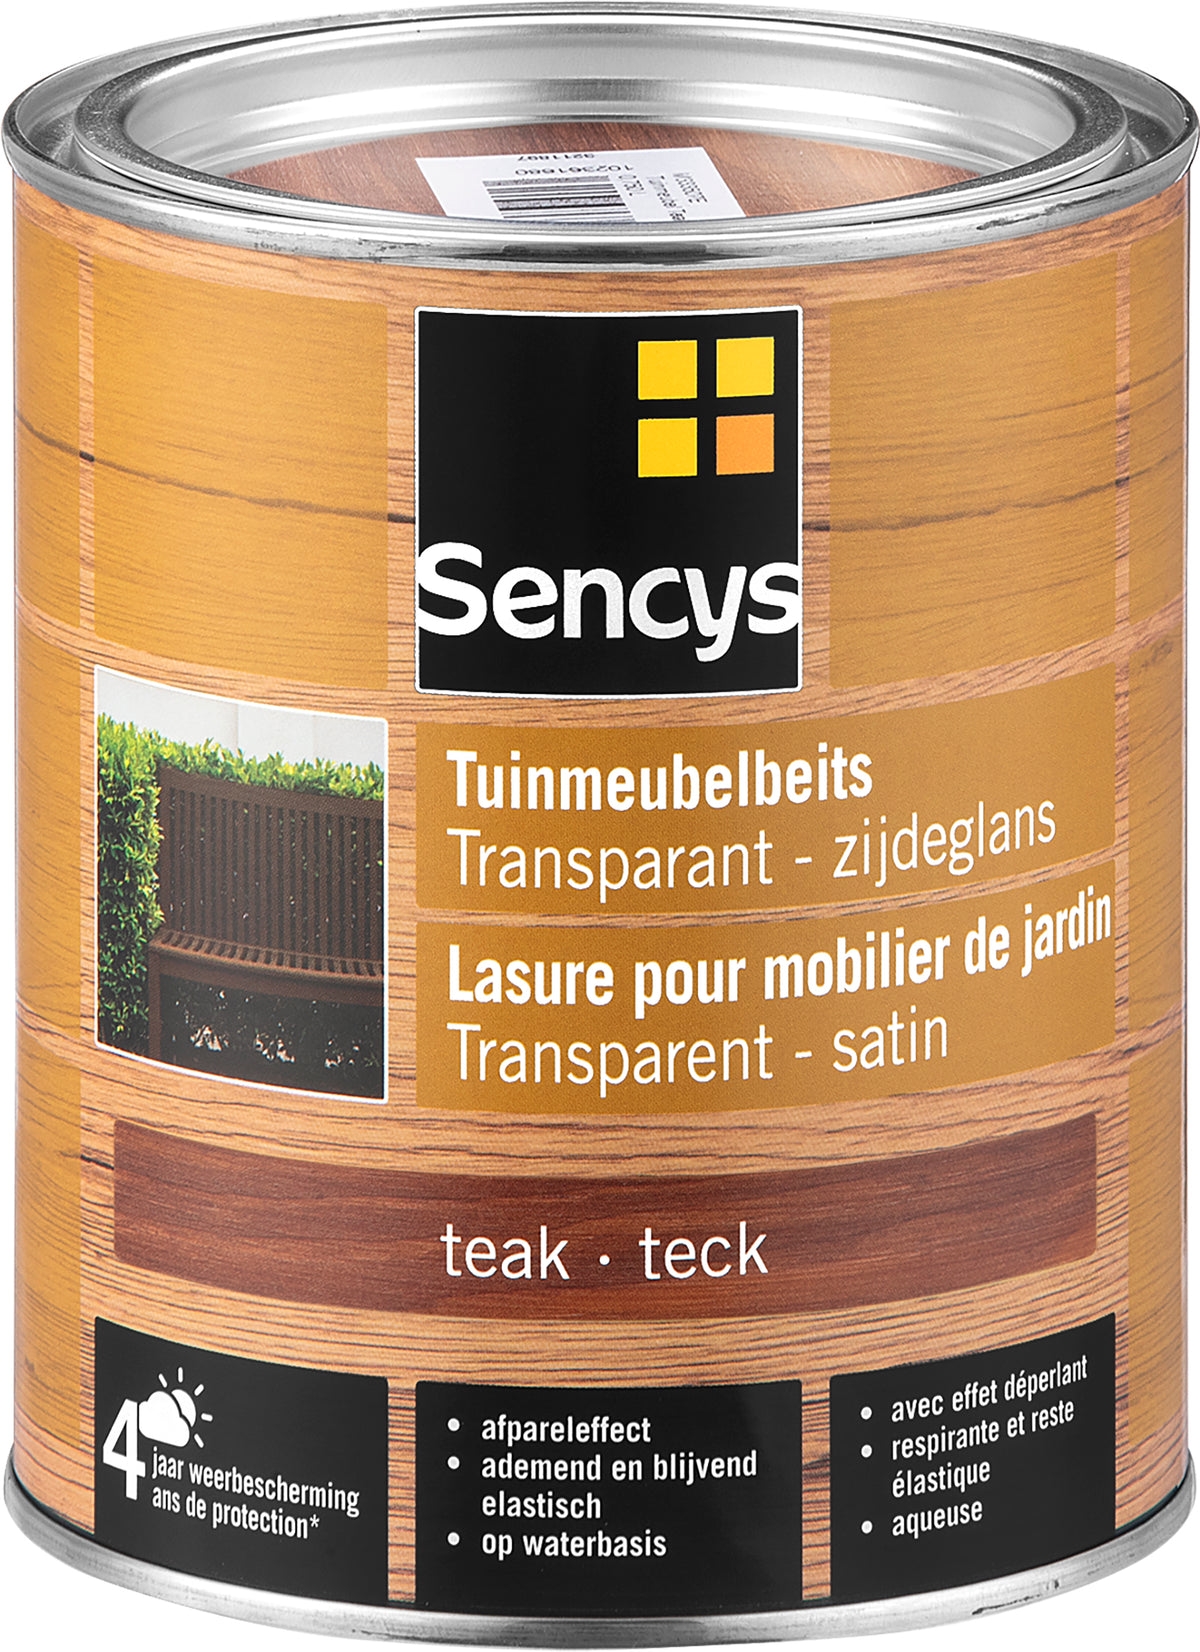 Sencys tuinmeubelbeits semi-tranparant teak 750ml